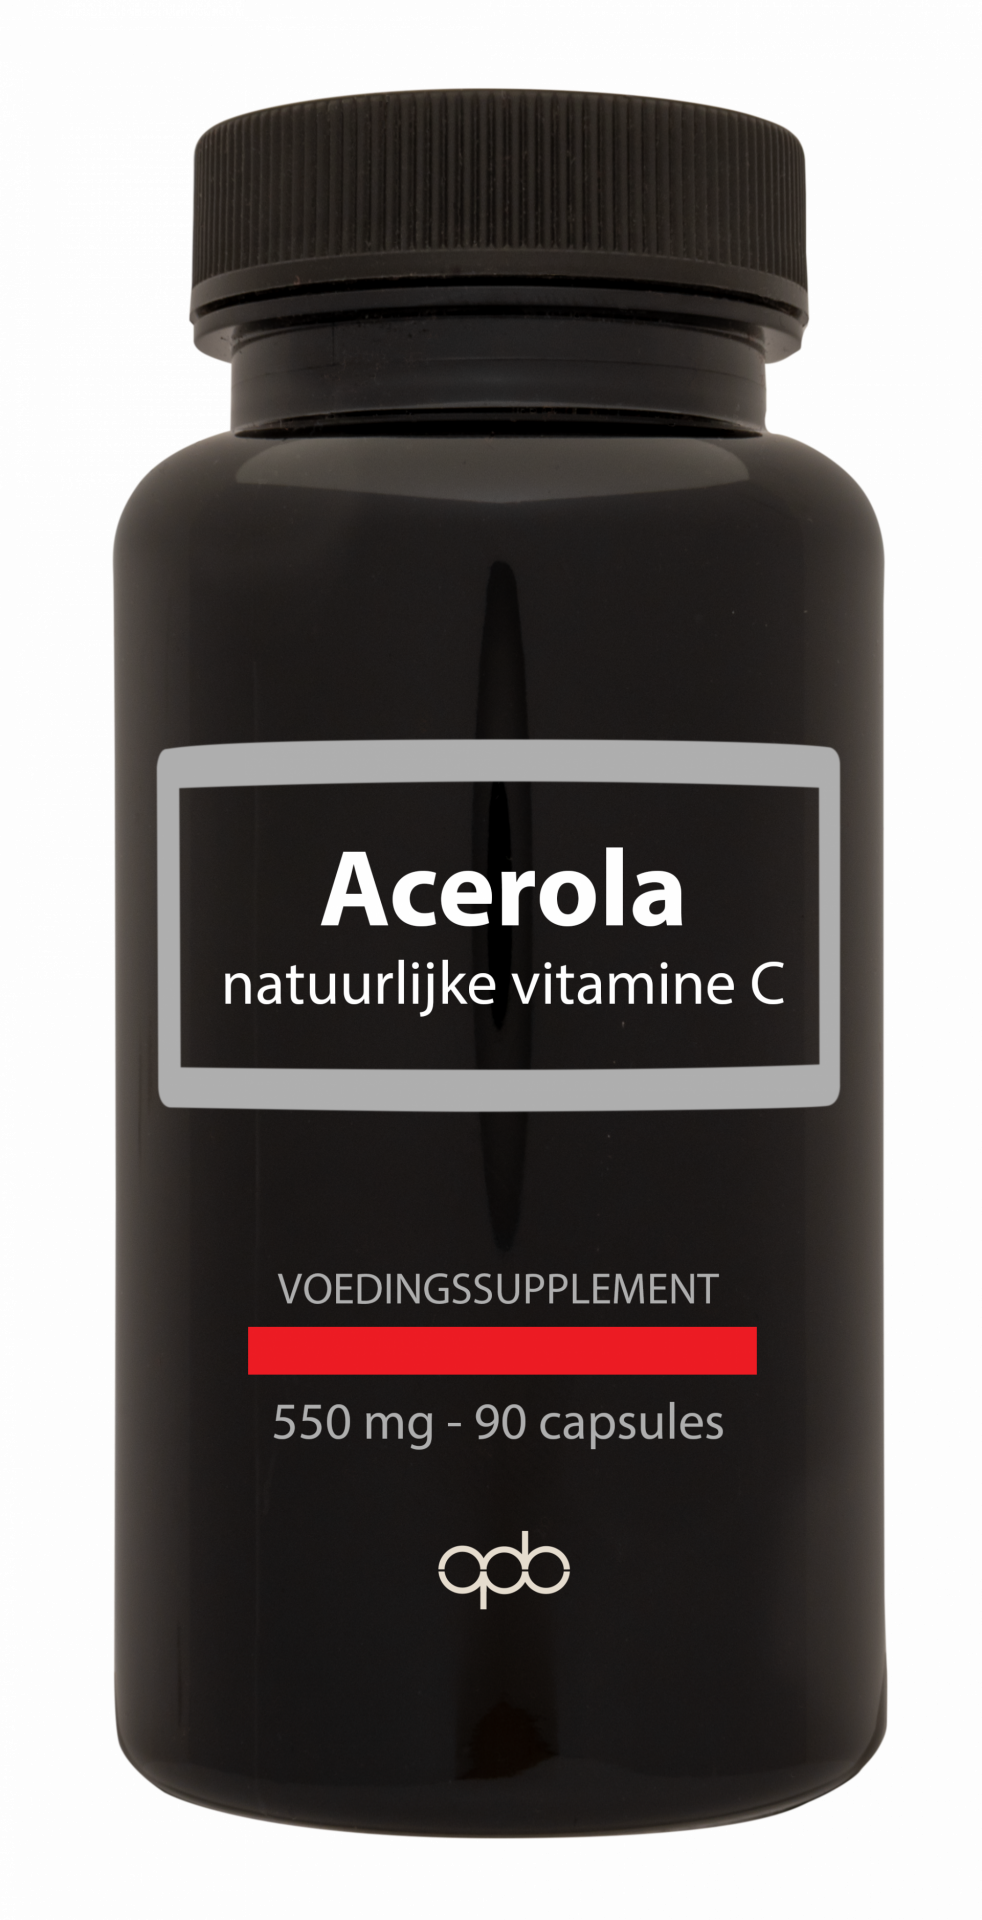 Acerola - natuurlijke vitamine C